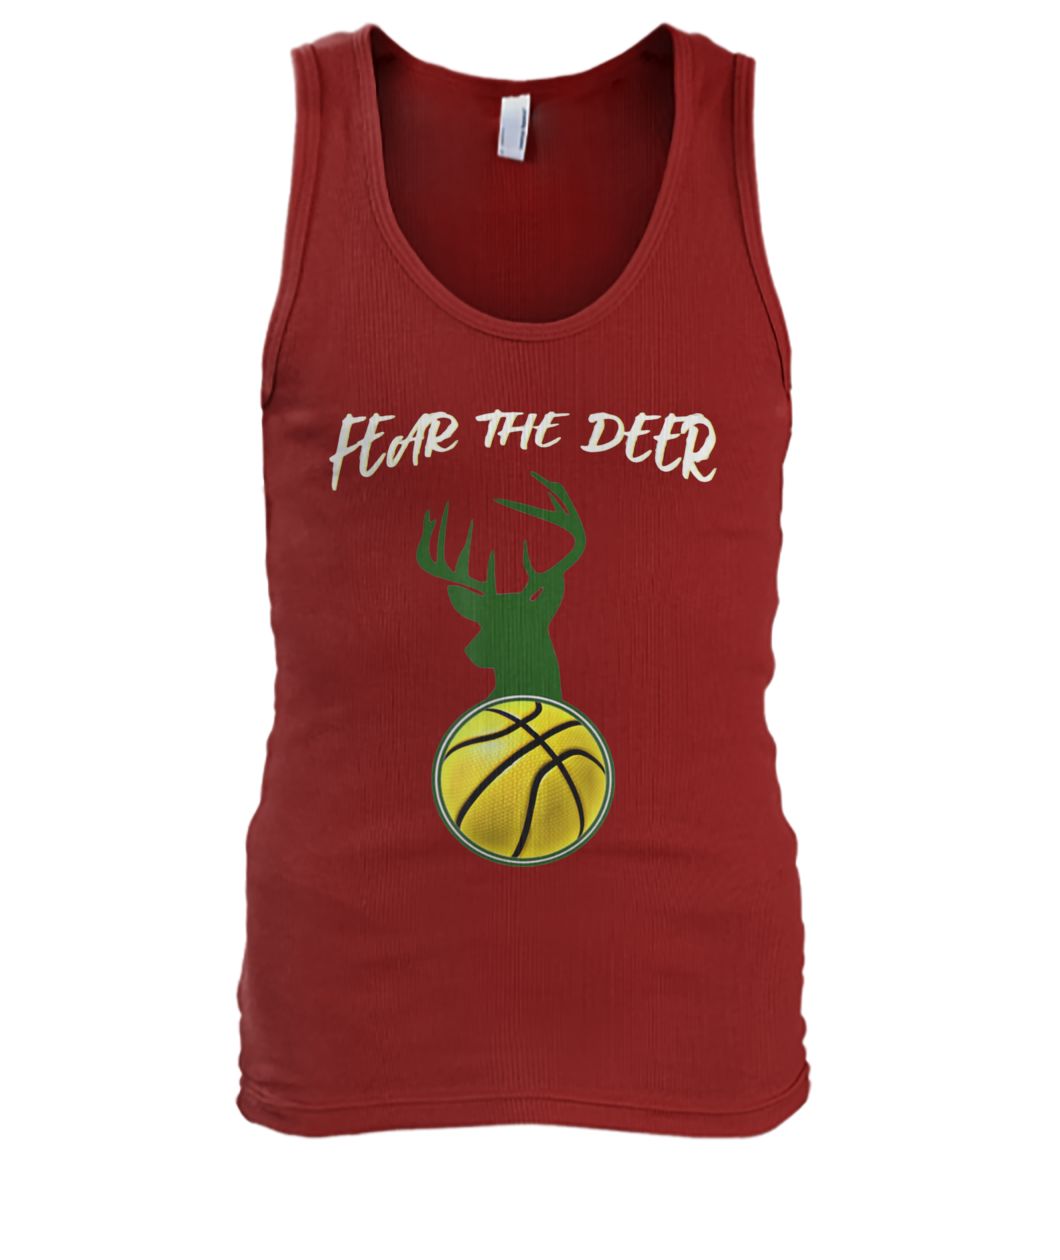 Fear the deer basketball men's tank top